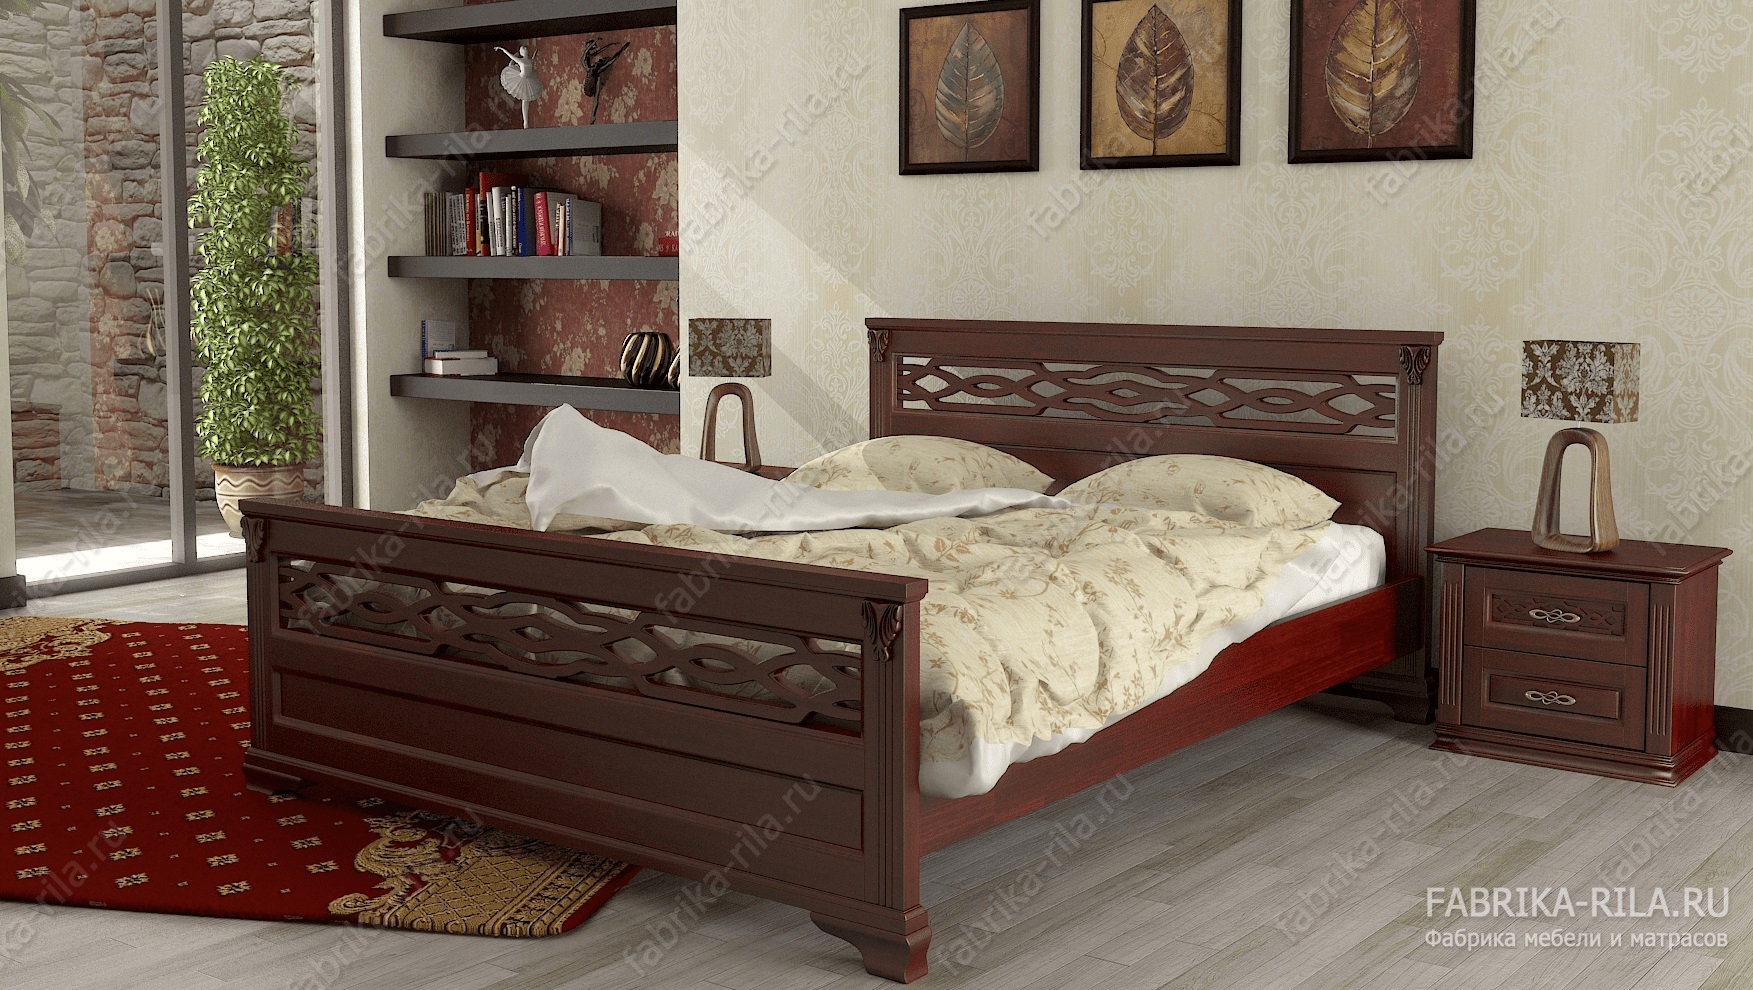 Кровать Lirоna 2 — 140x200 см. из сосны